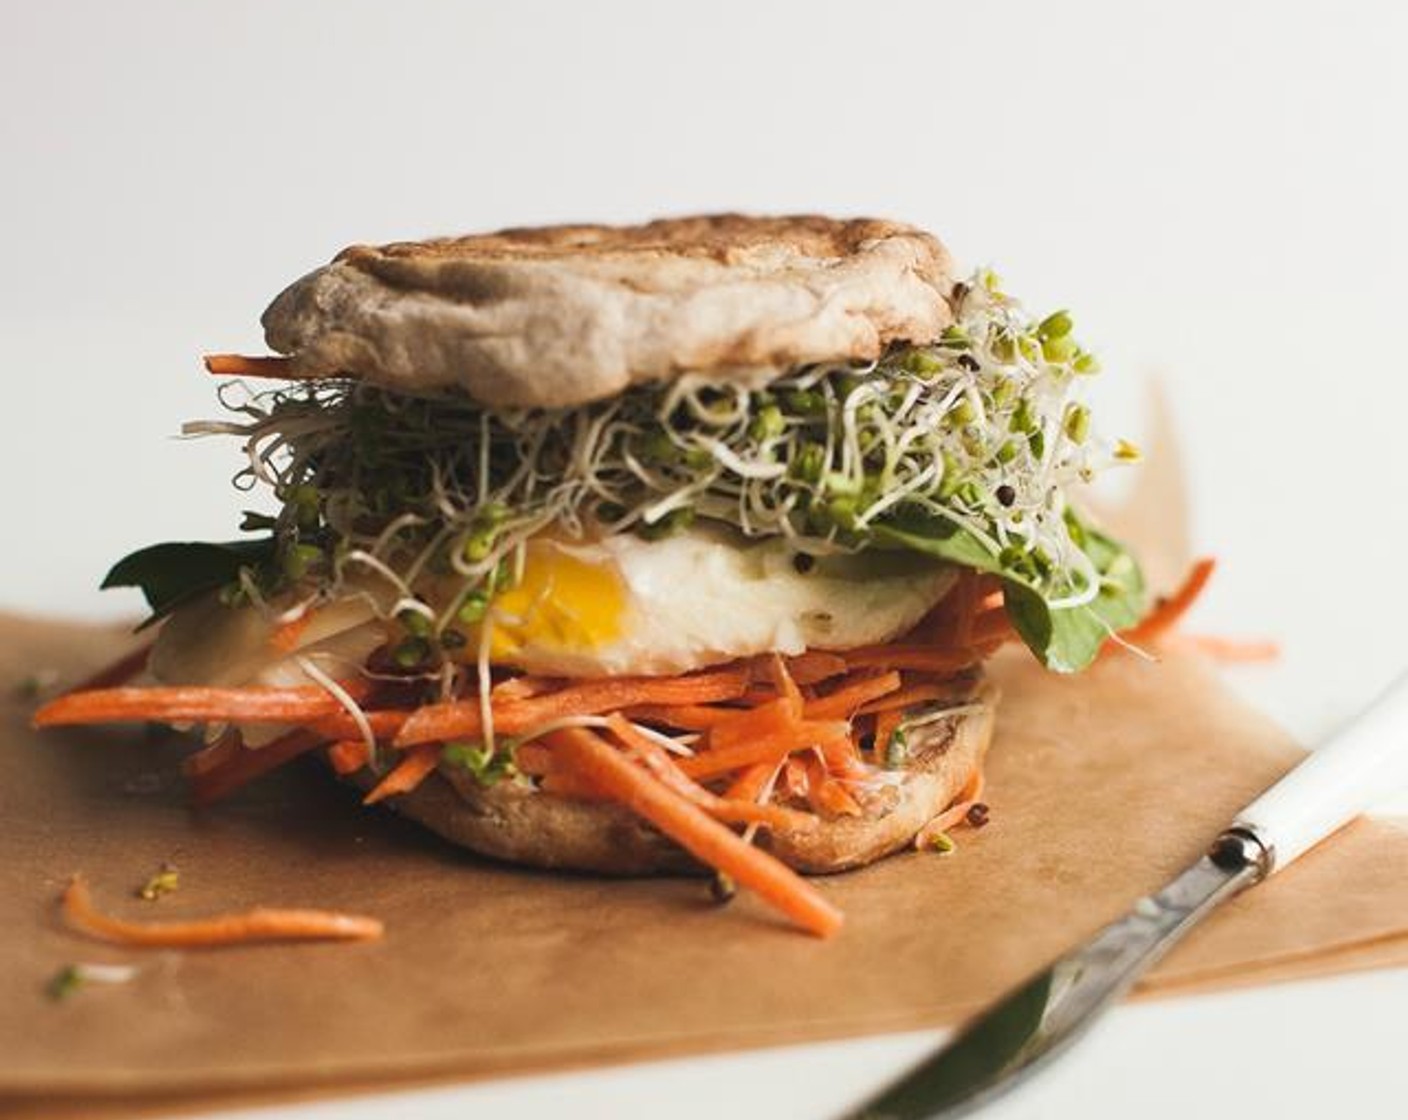 Fried Egg Sandwich - A Seven Minute Breakfast Sandwich